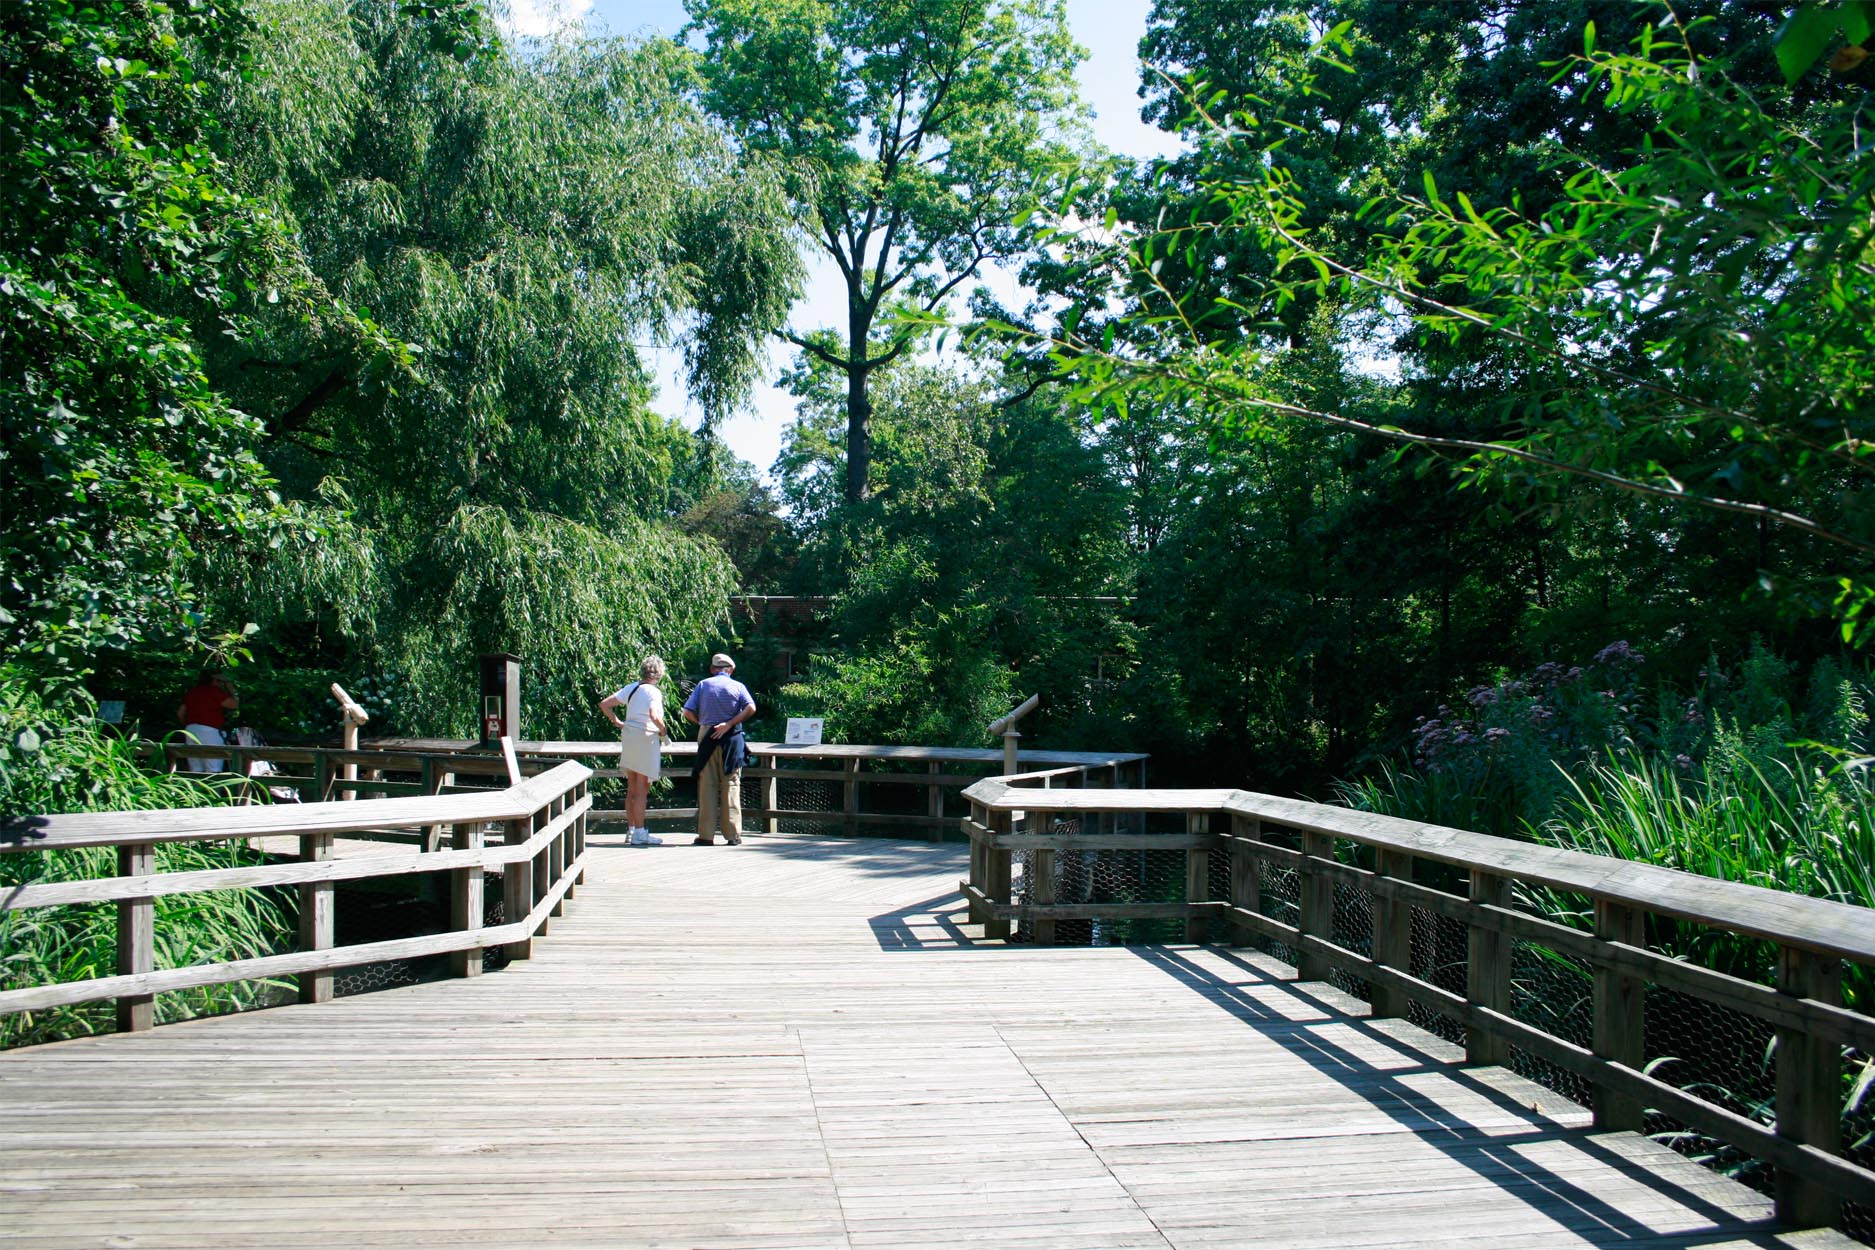 Prospect Park Zoo landscape architecture